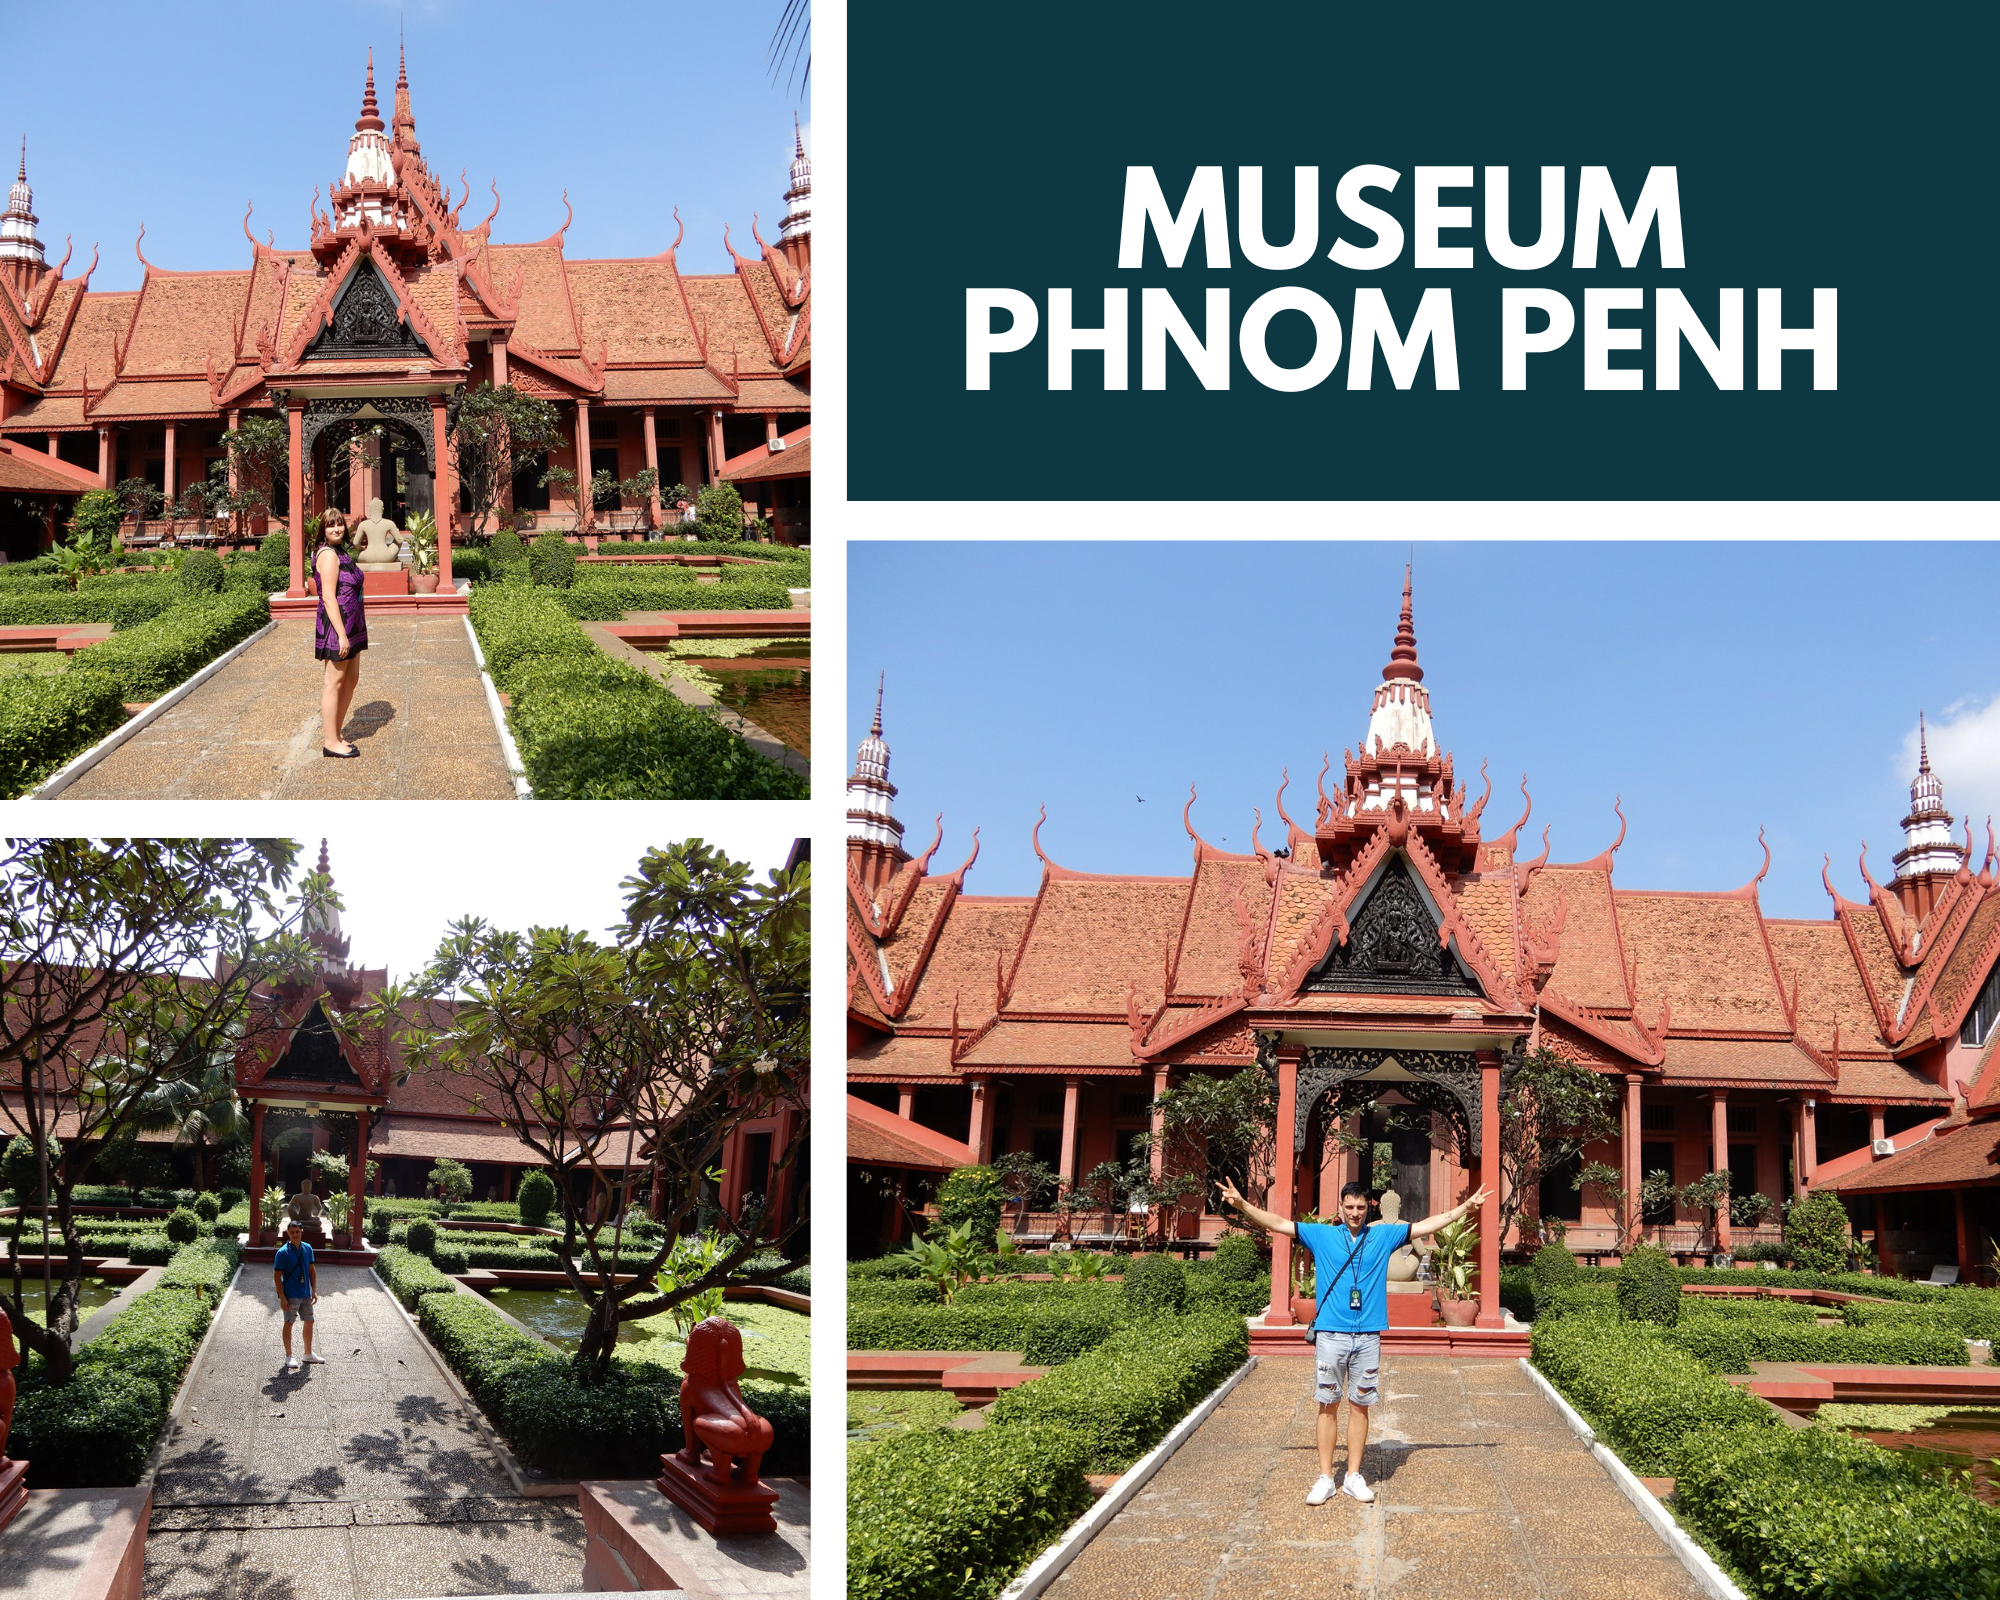 The Museum Phnom Penh Cambodia